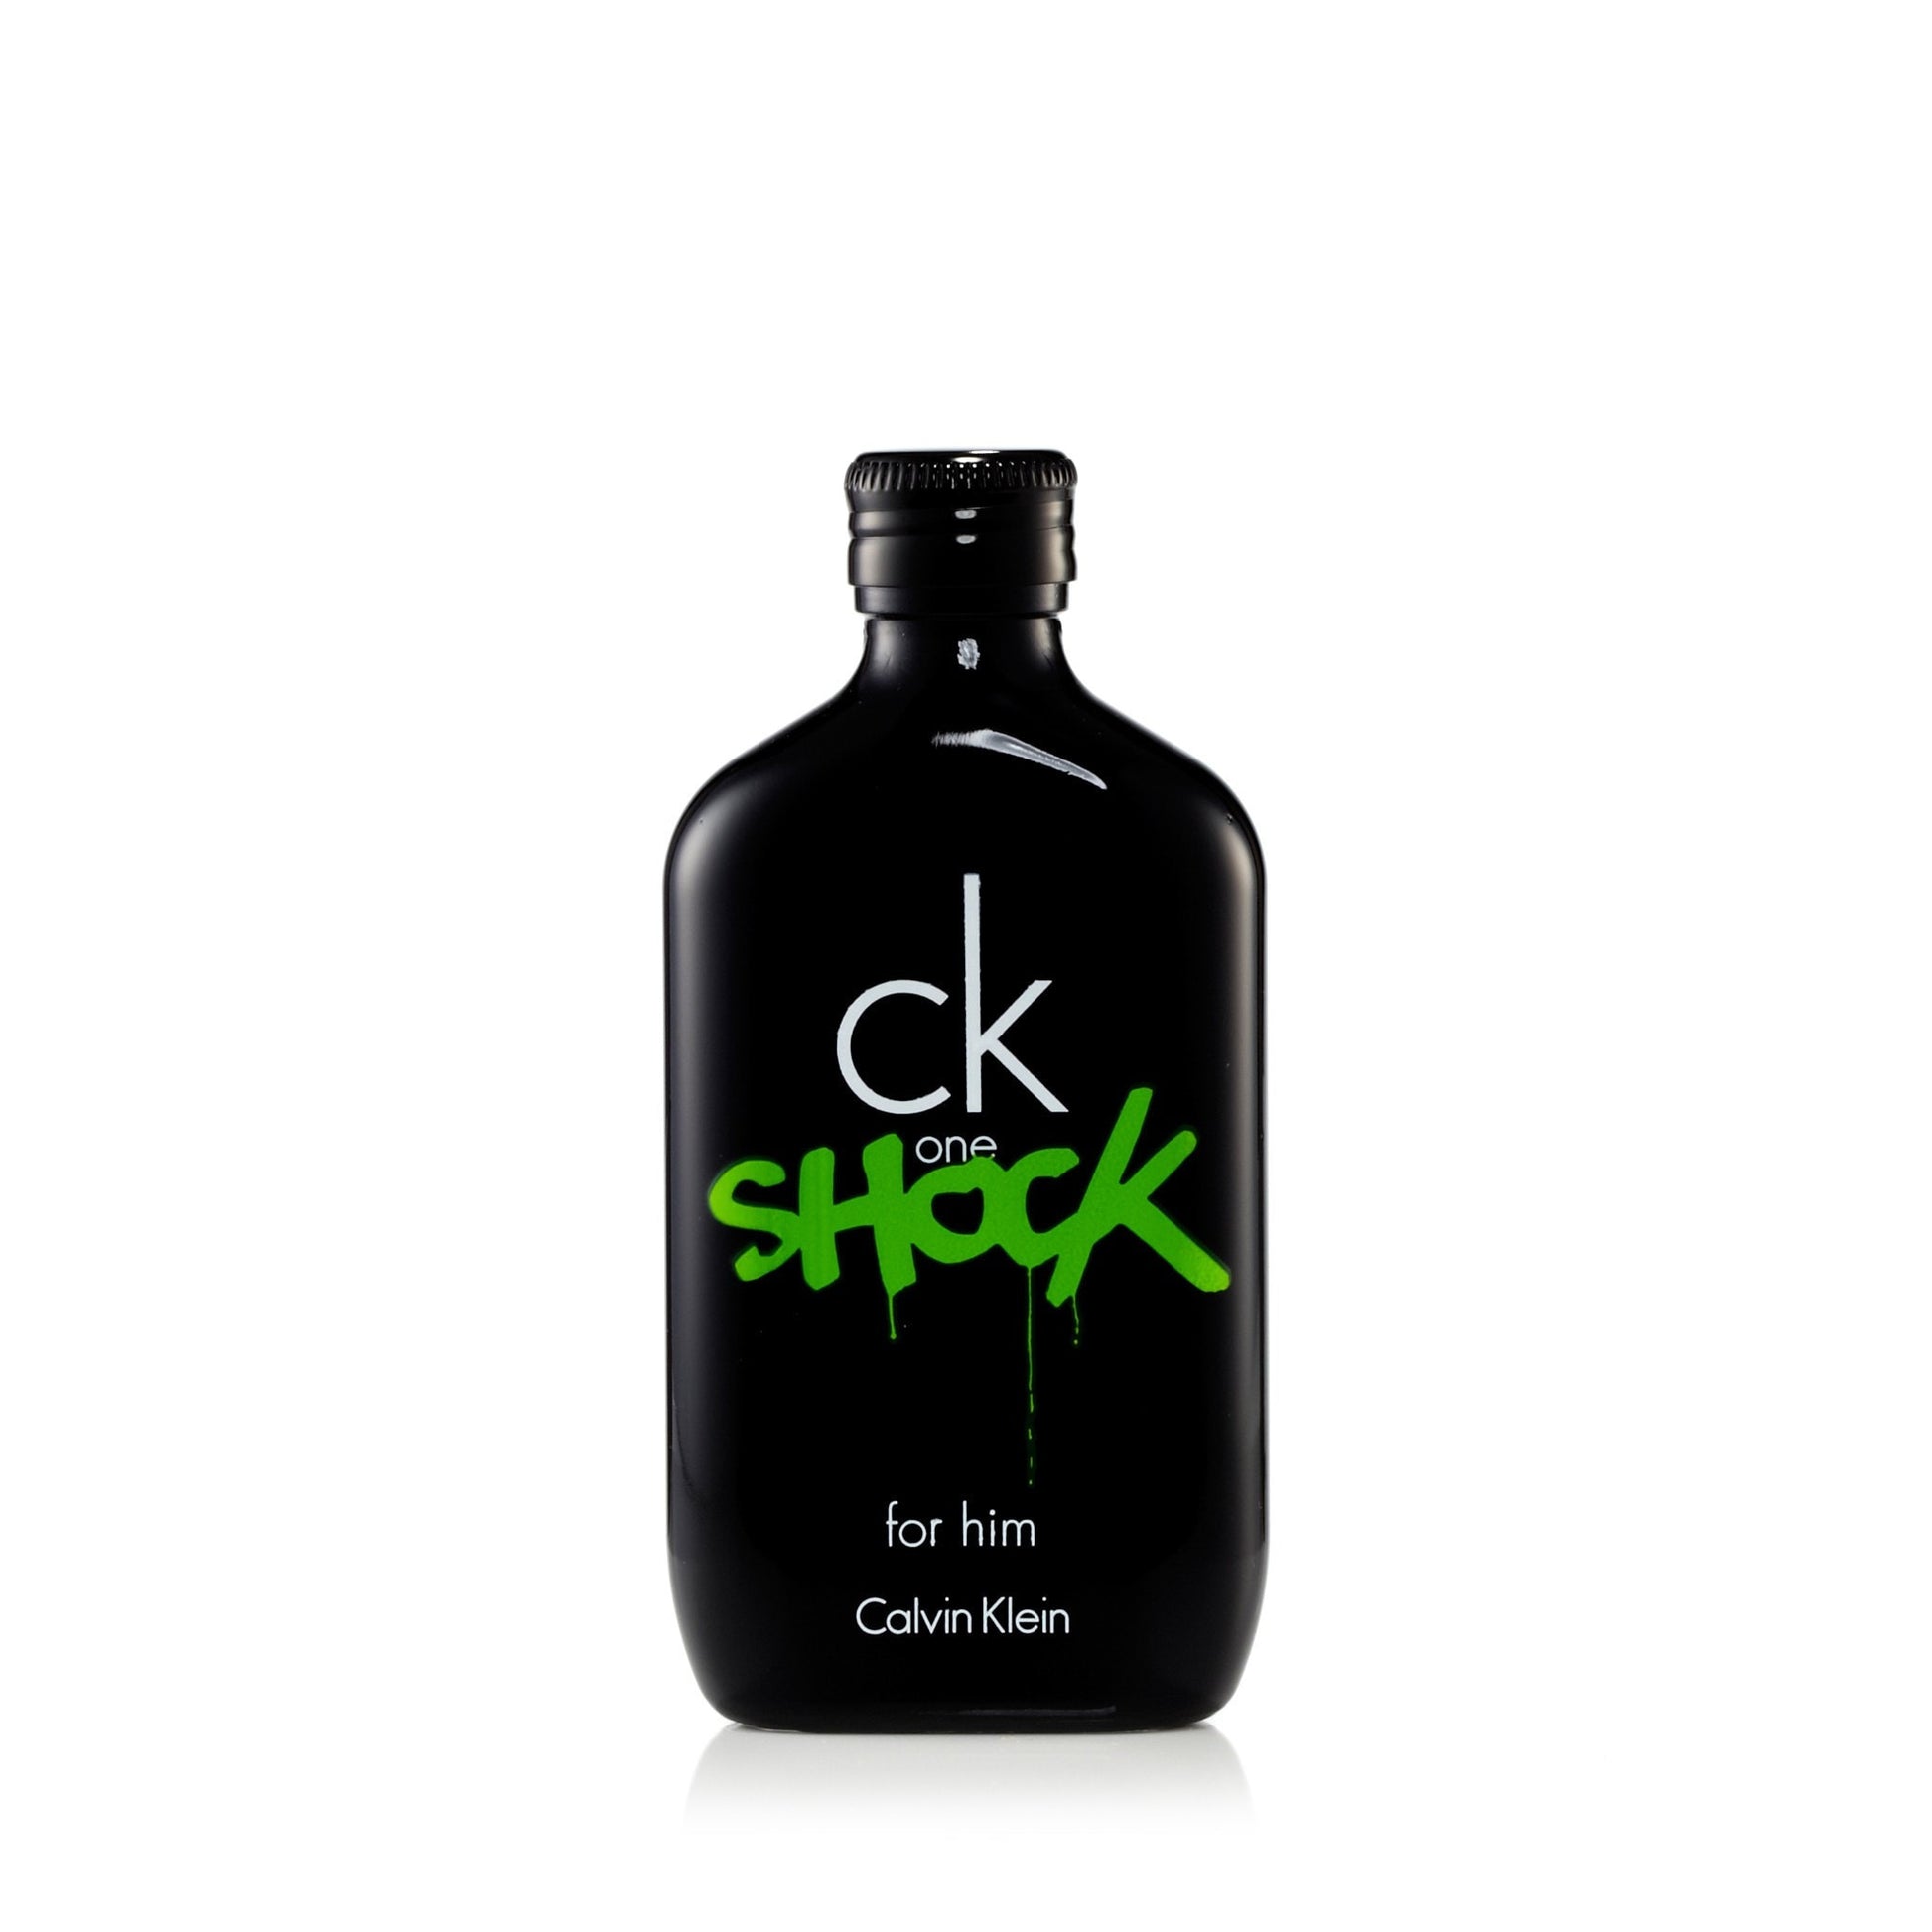 CK One Shock Eau de Toilette Spray for Men by Calvin Klein 3.4 oz. Click to open in modal